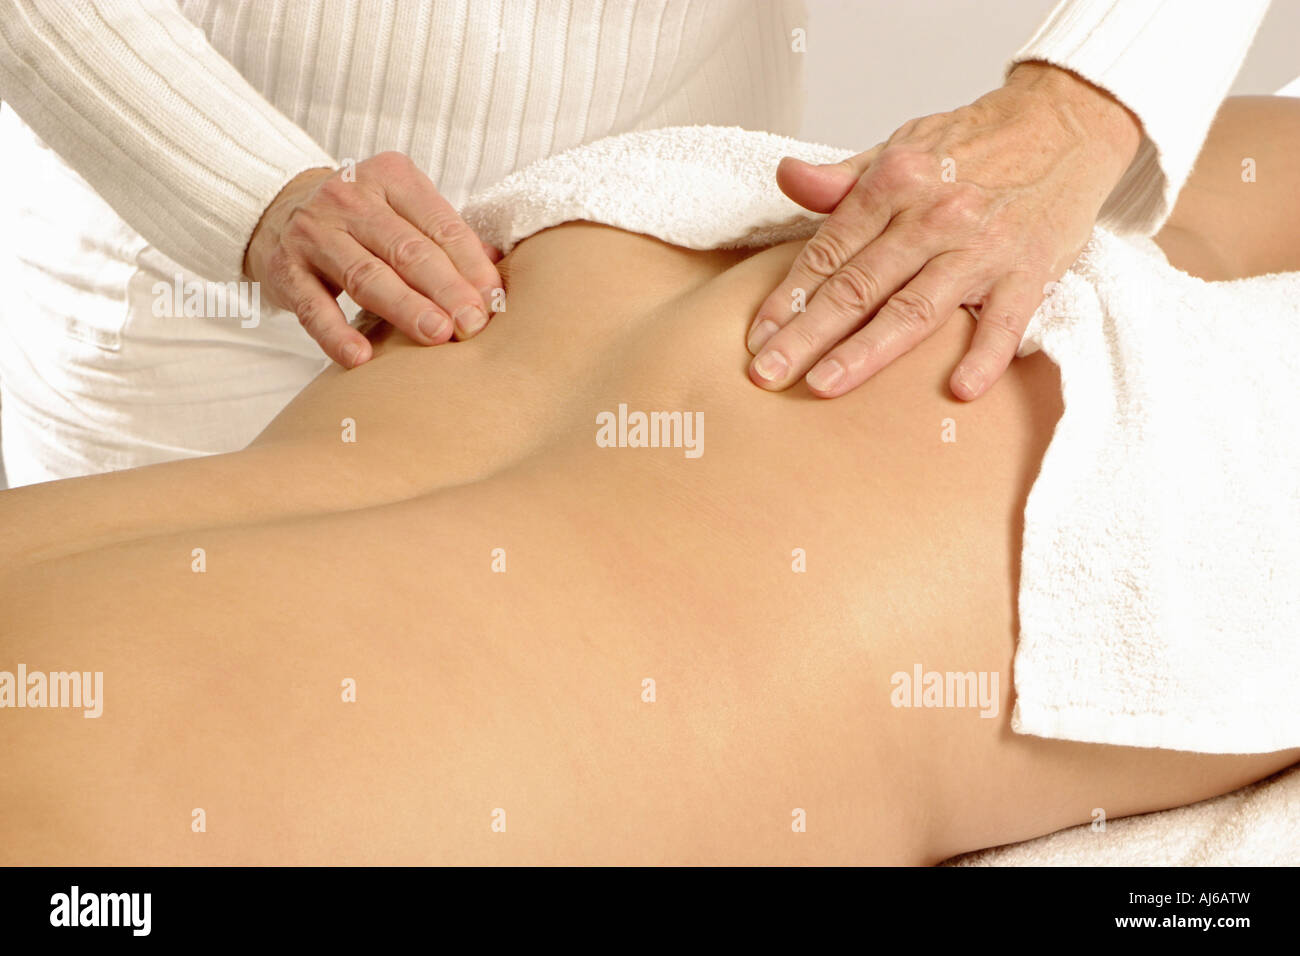 Une autre femme massage femme est de retour Banque D'Images